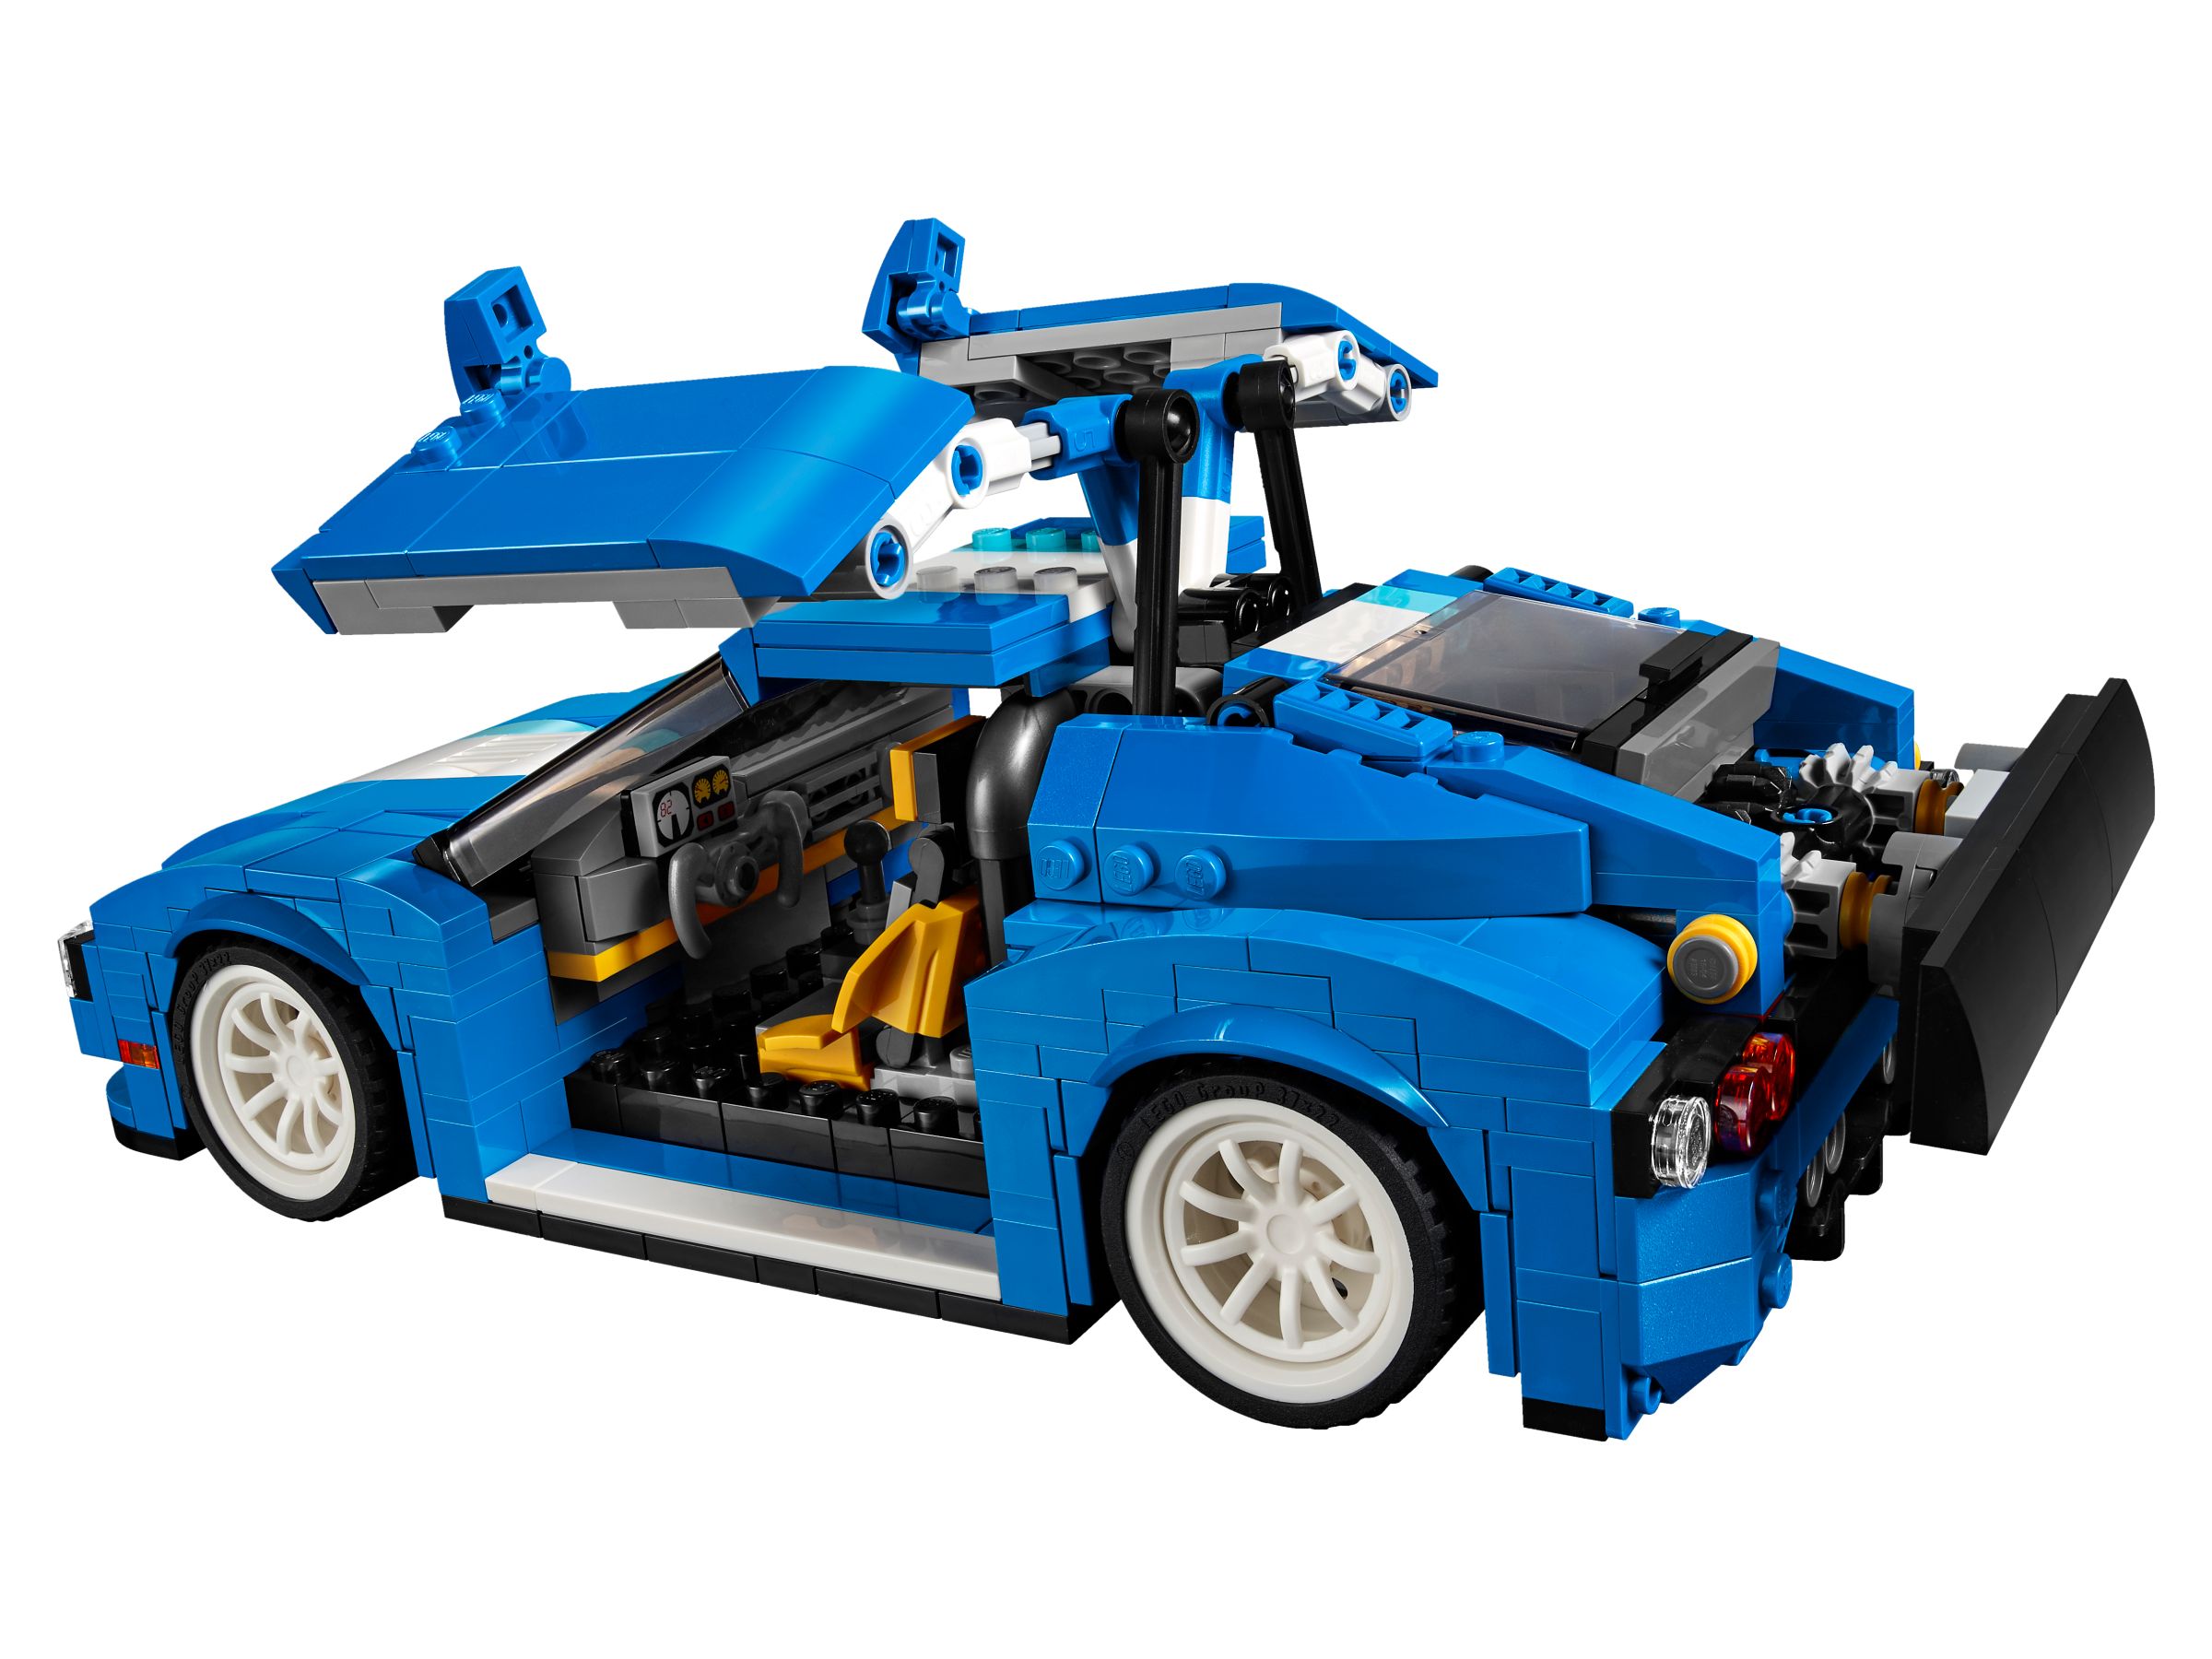 LEGO Creator 31070 Turborennwagen LEGO_31070_alt3.jpg